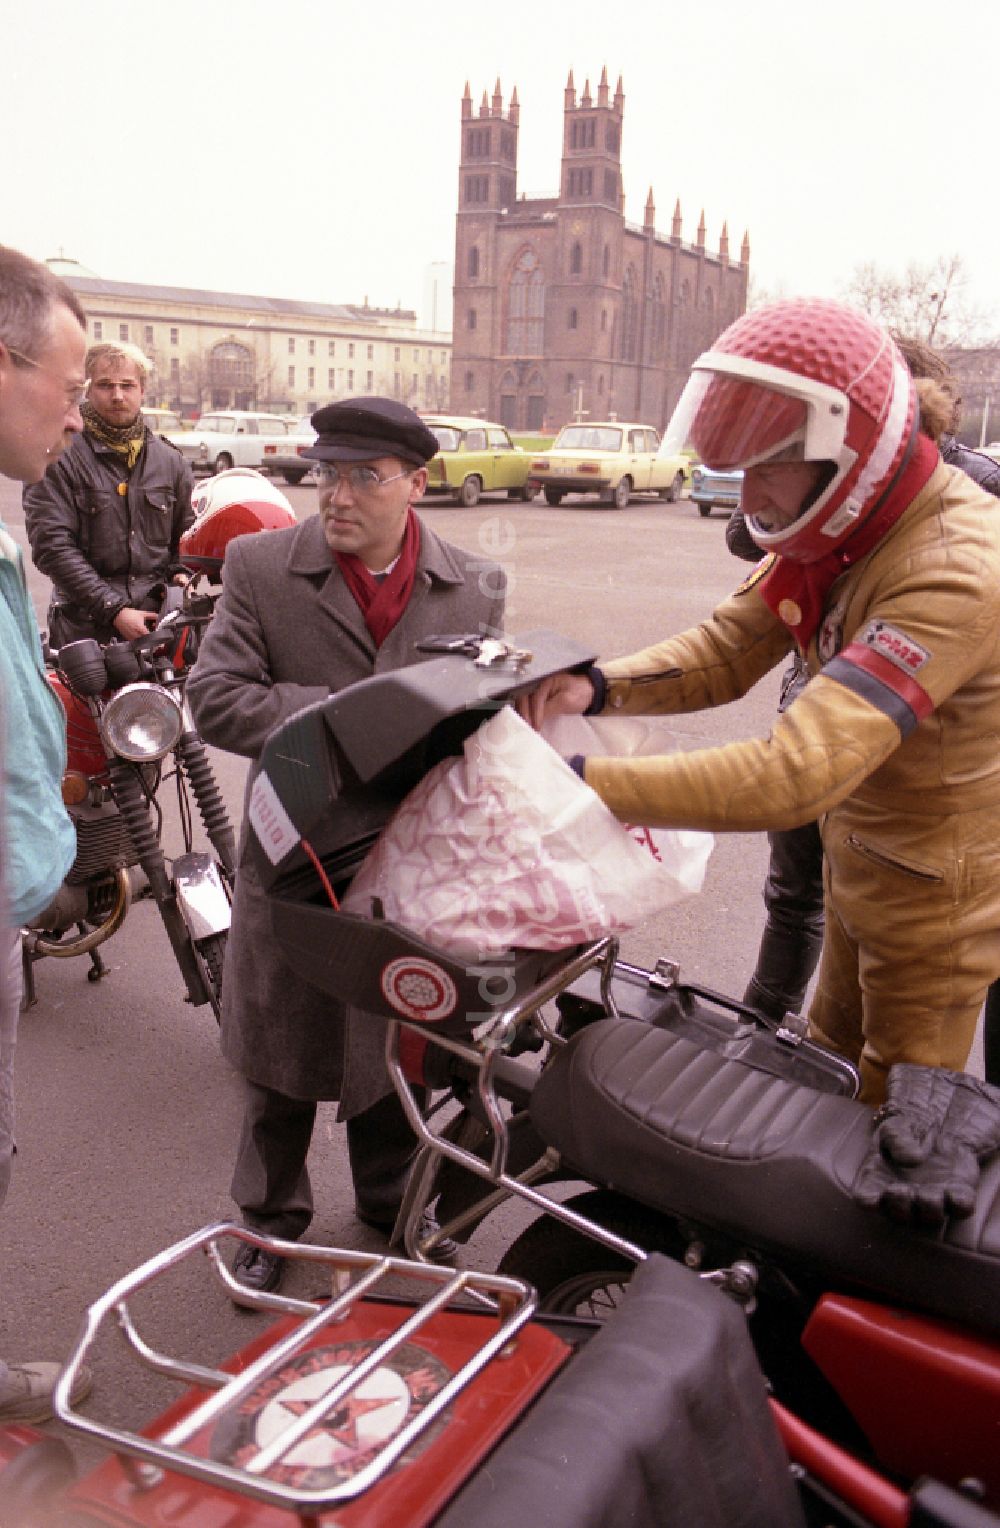 DDR-Bildarchiv: Berlin - Politiker Gregor Gysi mit einem Motorrad MZ in Berlin auf dem Gebiet der ehemaligen DDR, Deutsche Demokratische Republik